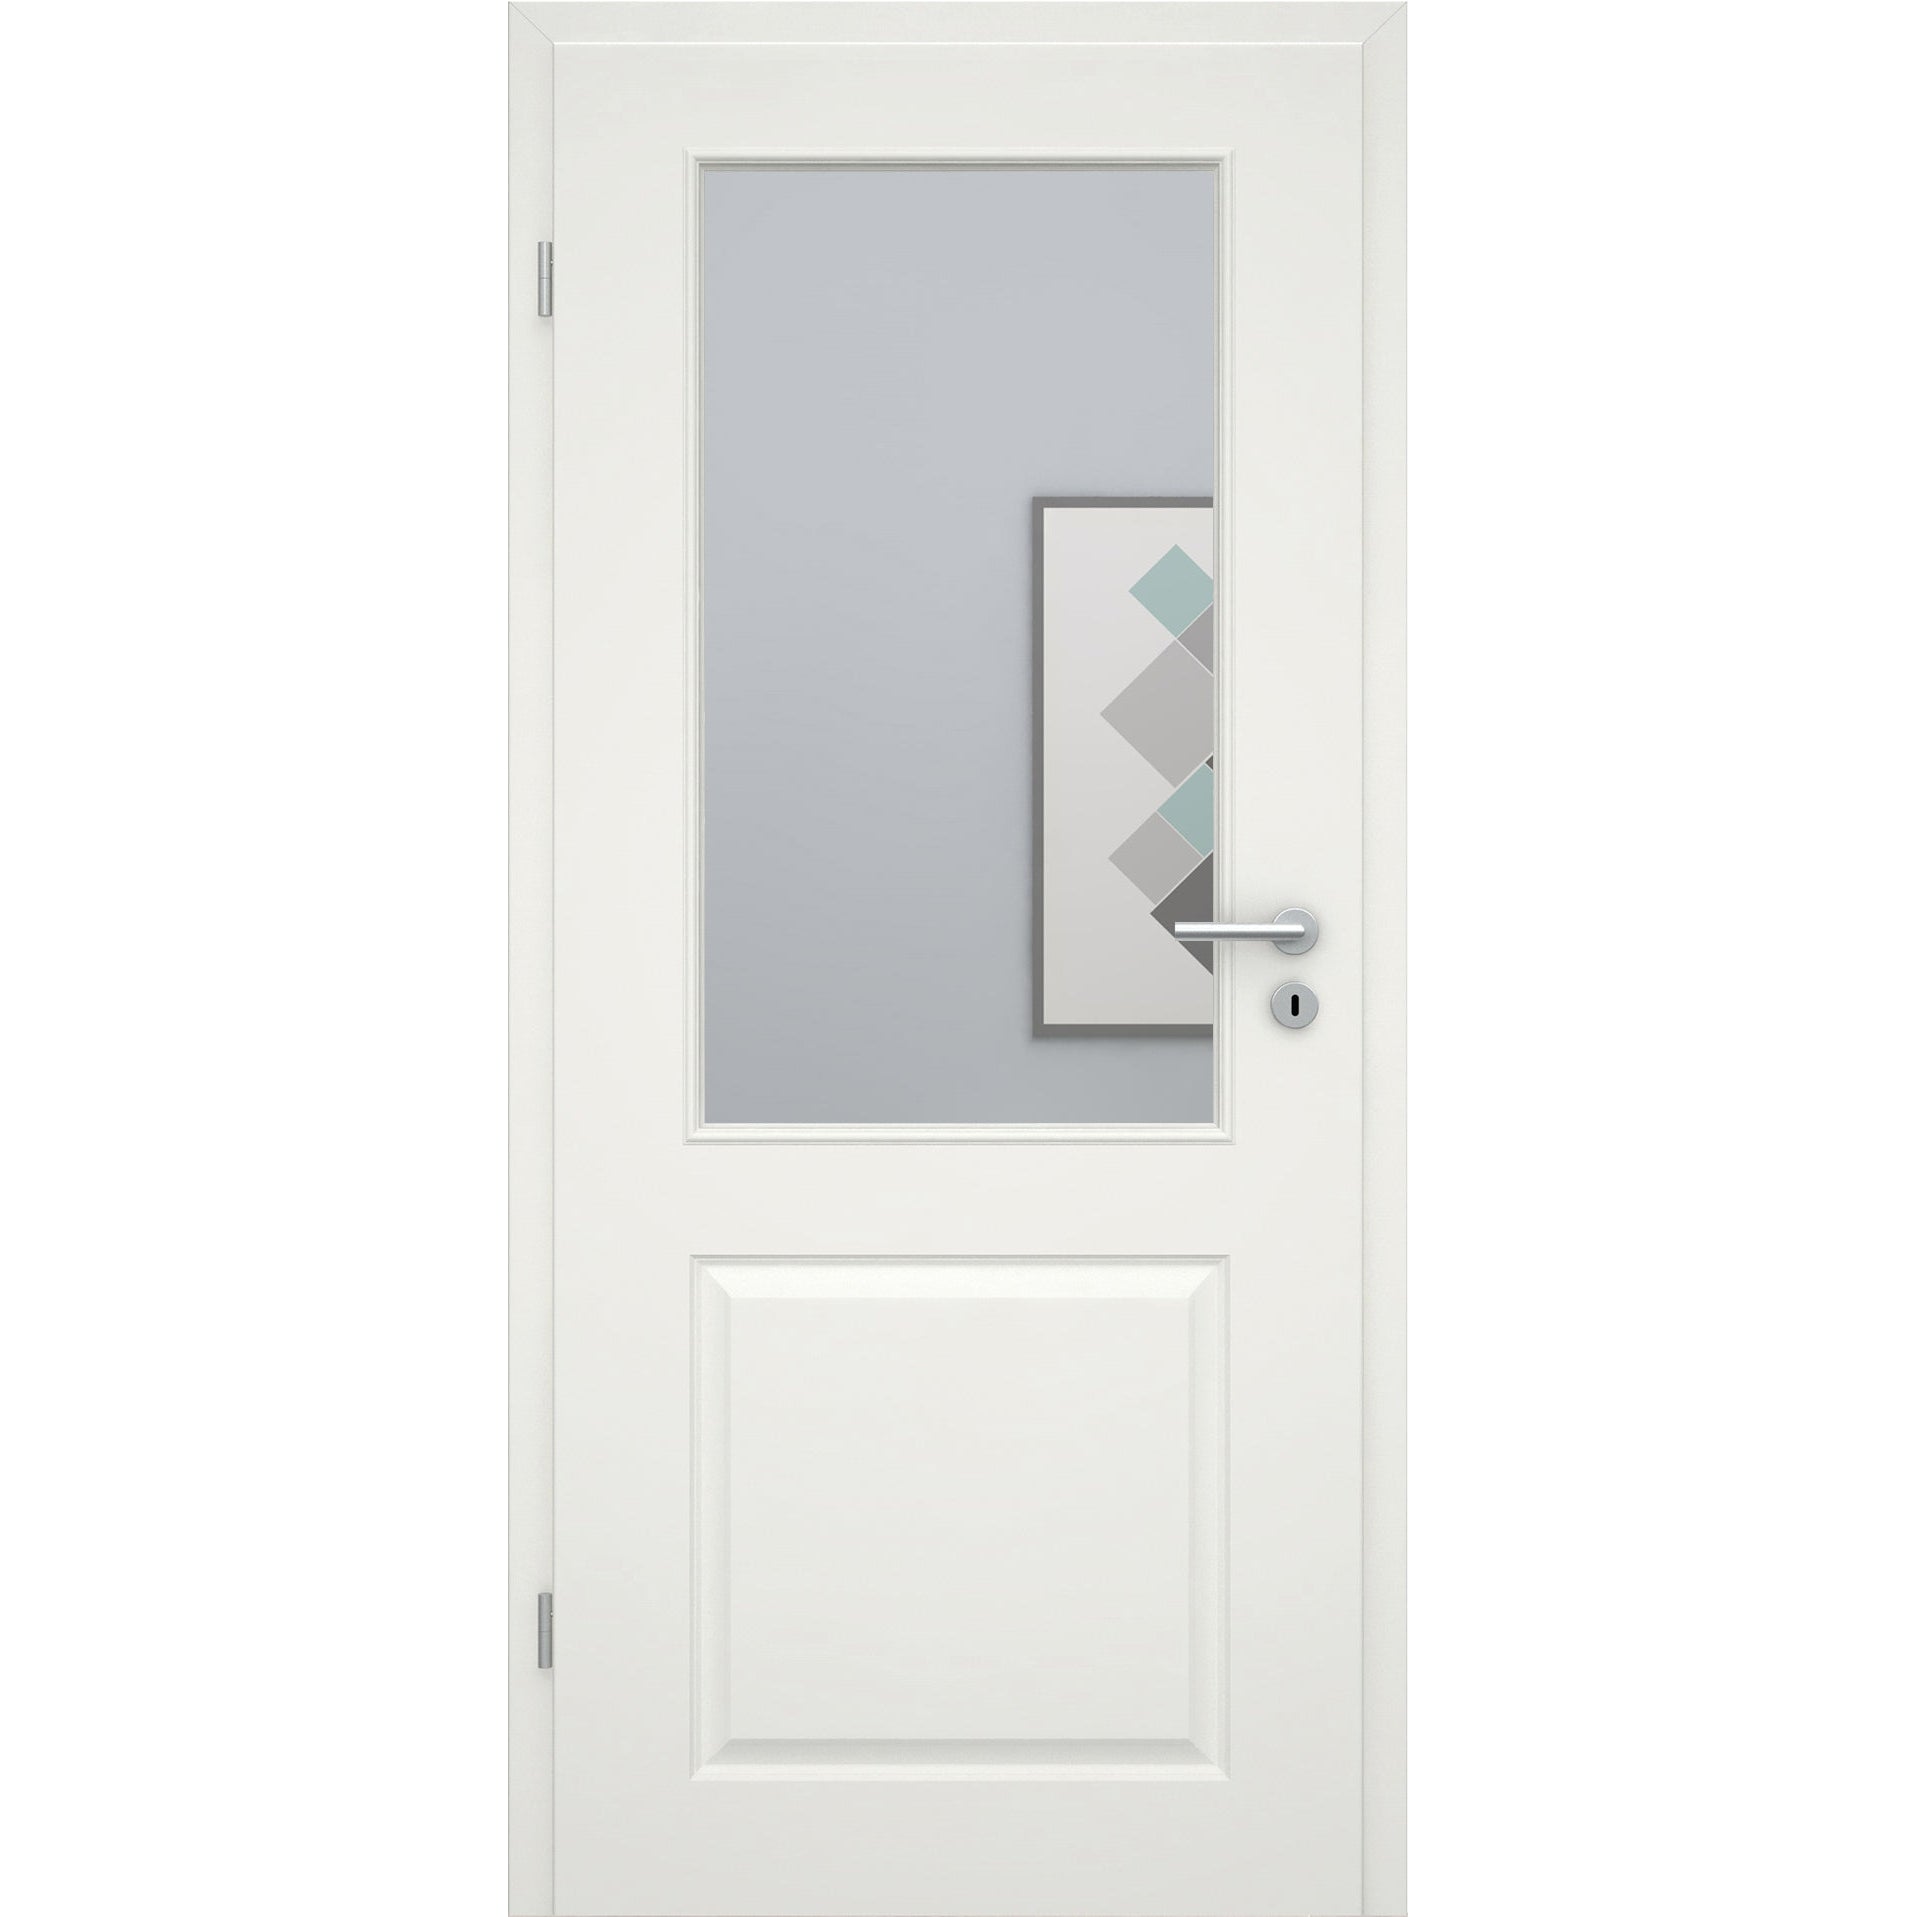 Zimmertür soft-weiß Stiltür mit 2 Kassetten und Lichtausschnitt Eckkante - Modell Stiltür K21LA